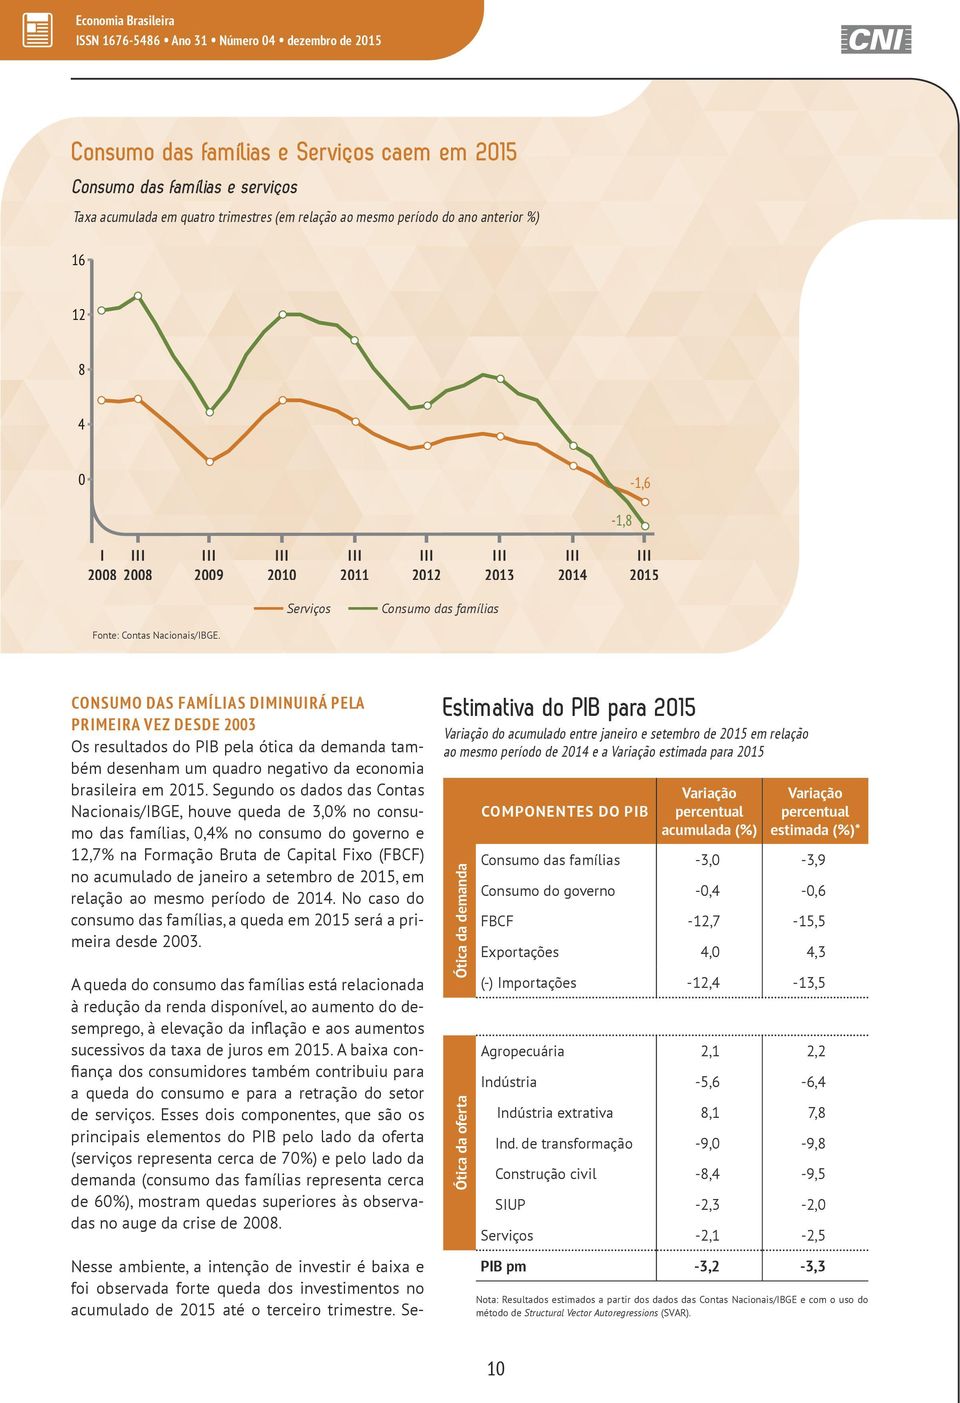 CONSUMO DAS FAMÍLIAS DIMINUIRÁ PELA PRIMEIRA VEZ DESDE 2003 Os resultados do PIB pela ótica da demanda também desenham um quadro negativo da economia brasileira em 2015.